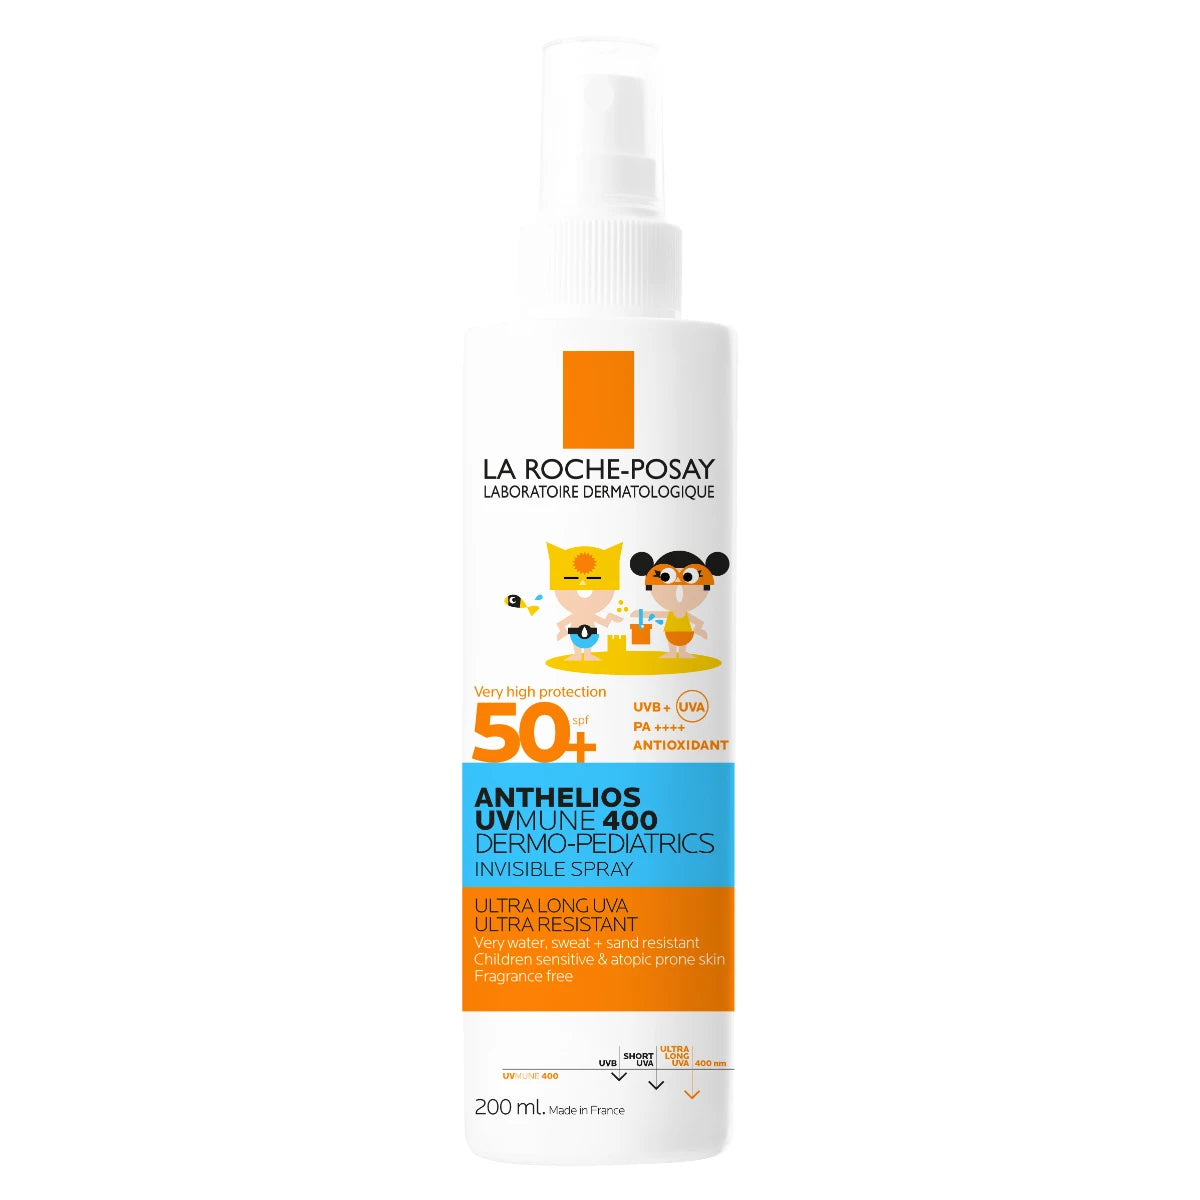 LA ROCHE-POSAY Anthelios UVMUNE 400 Kids Invisible Spray SPF50+ 200 ml sopii lasten iholle ja aktiivisuustasolle